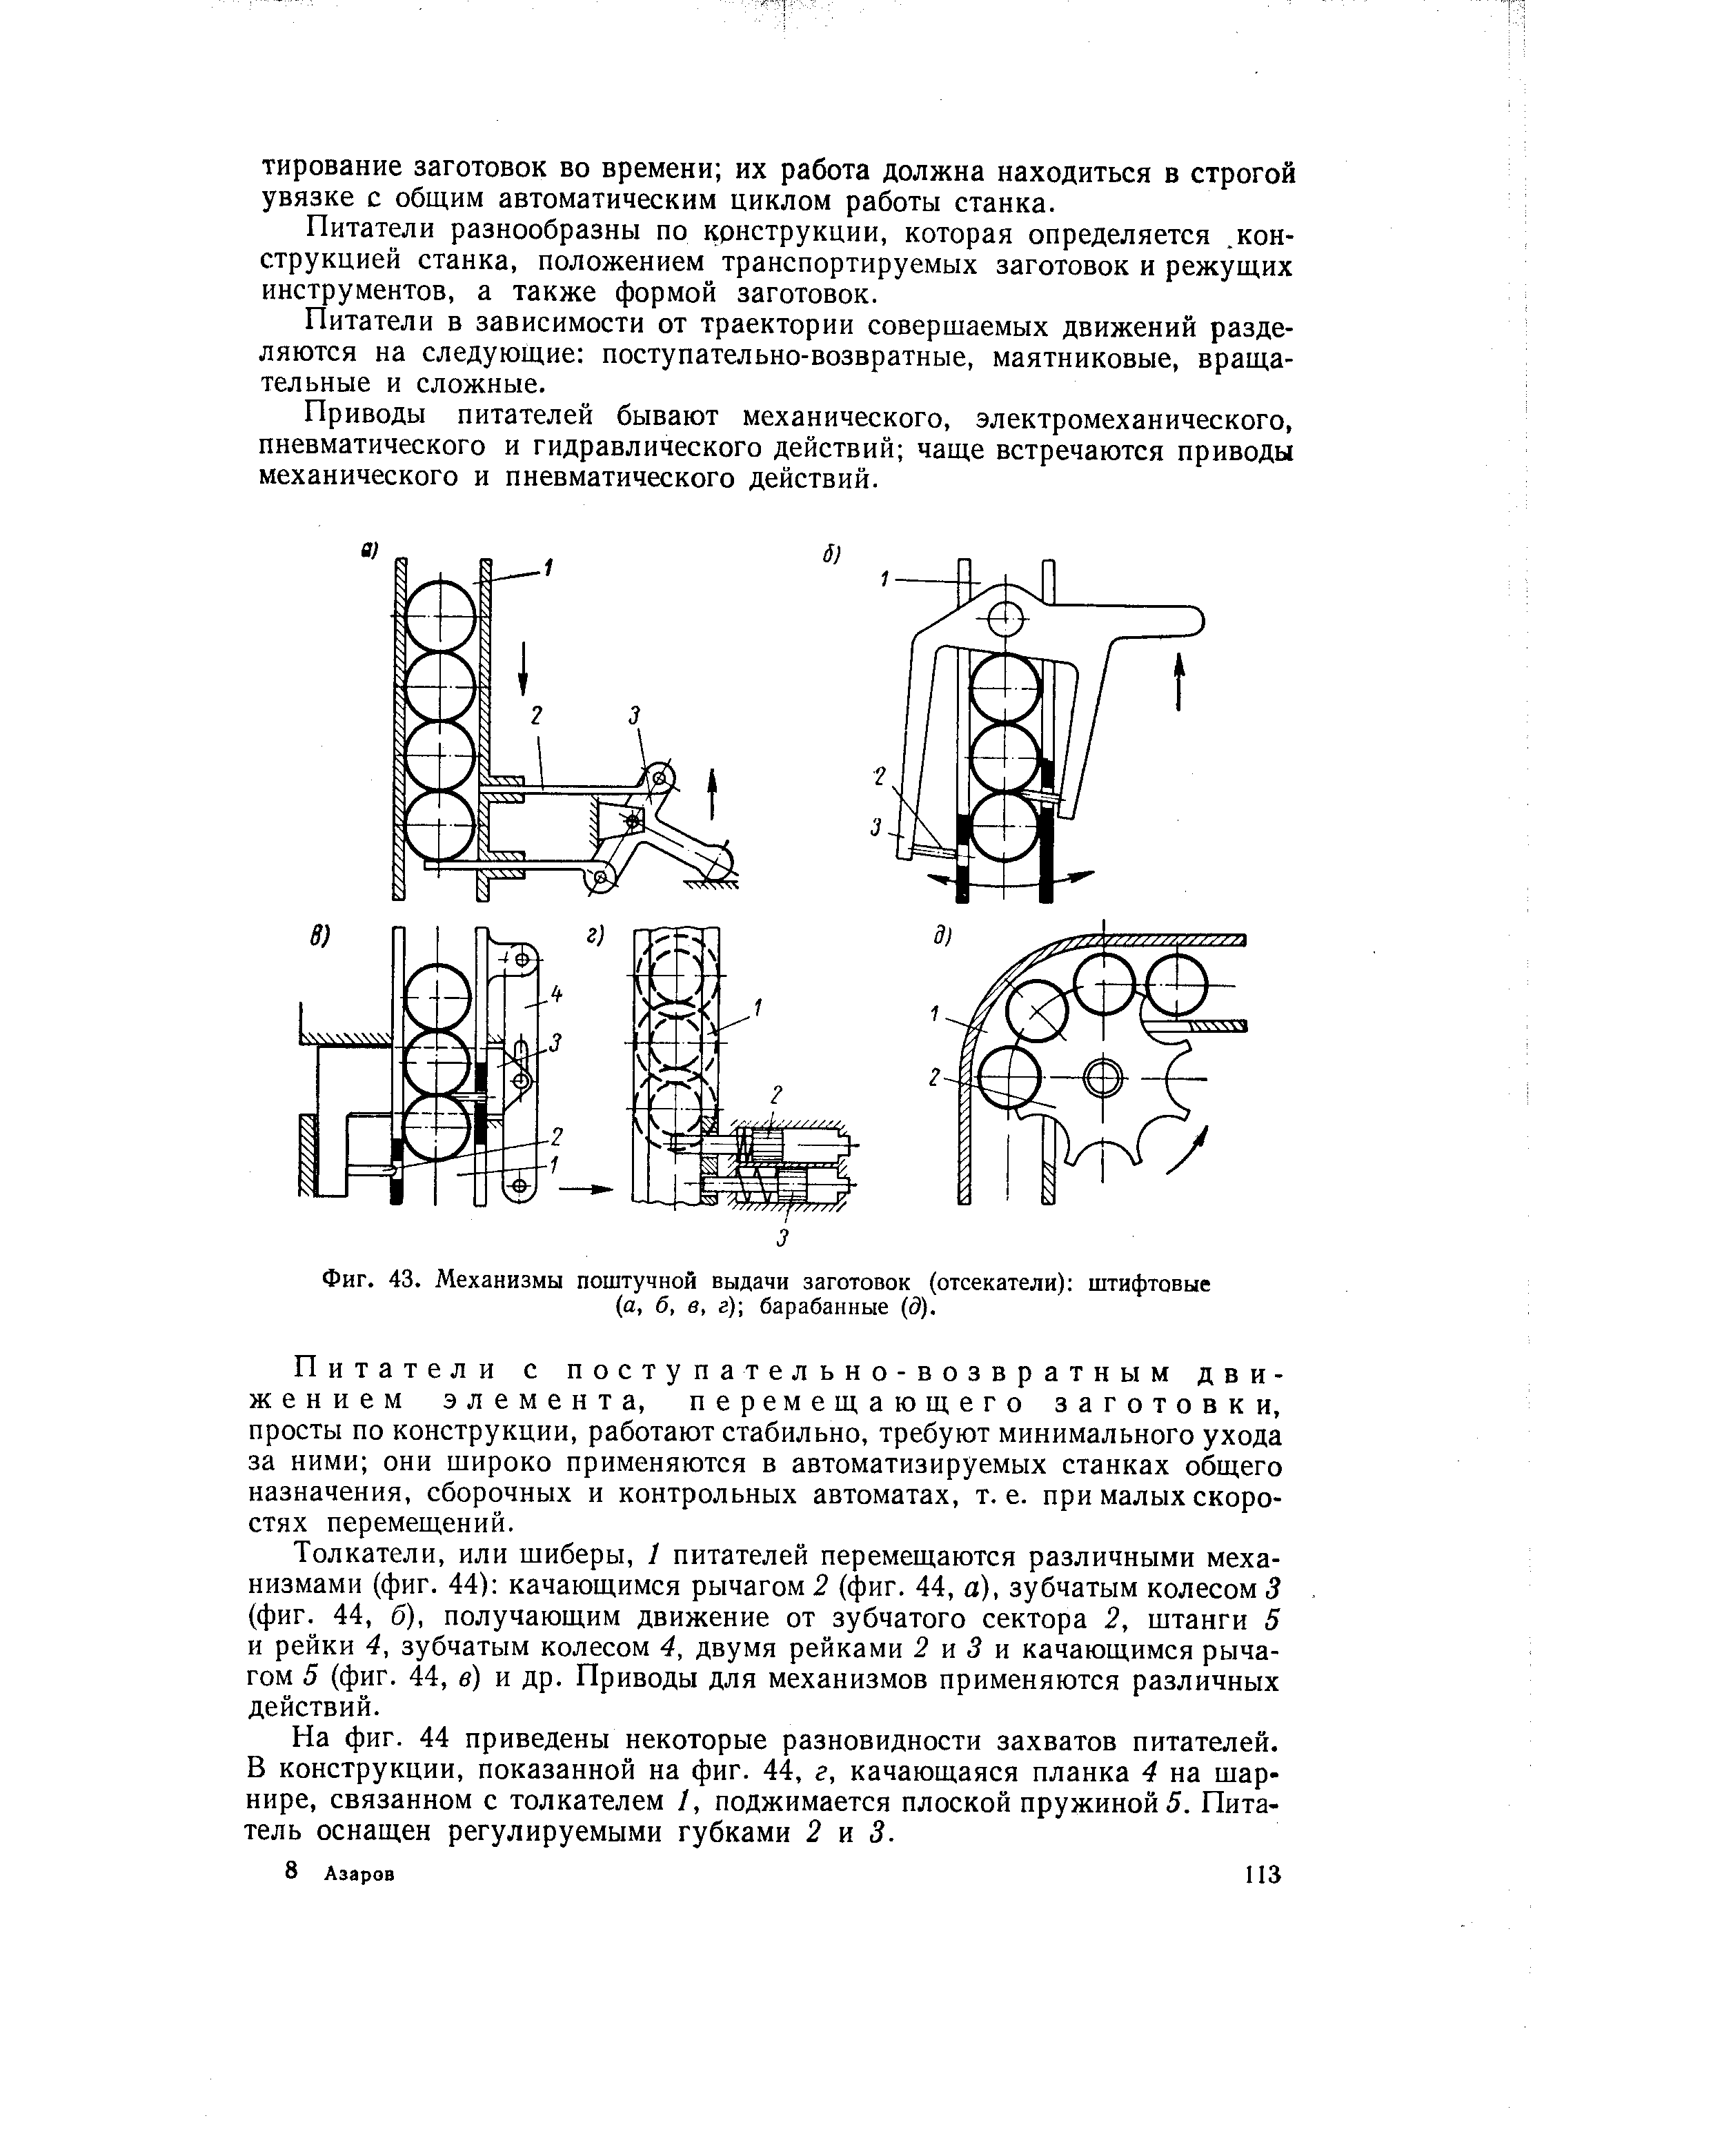 Фиг. 43. Механизмы поштучной выдачи заготовок (отсекатели) штифтовые (а, б, в, г) барабанные (3).
